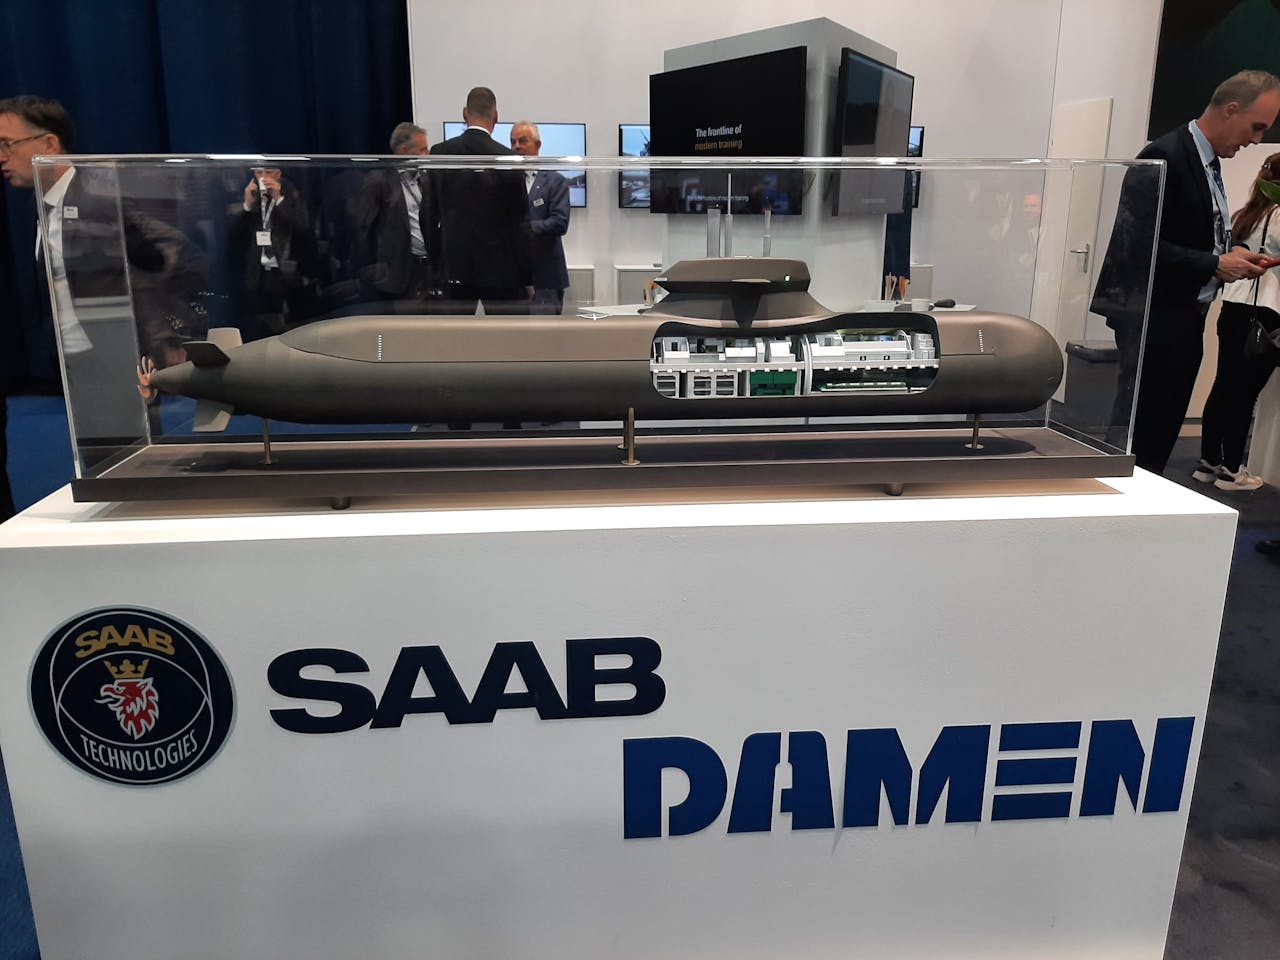 Schaalmodel van de onderzeeboot die Saab samen met Damen voor Nederland wil gaan bouwen.